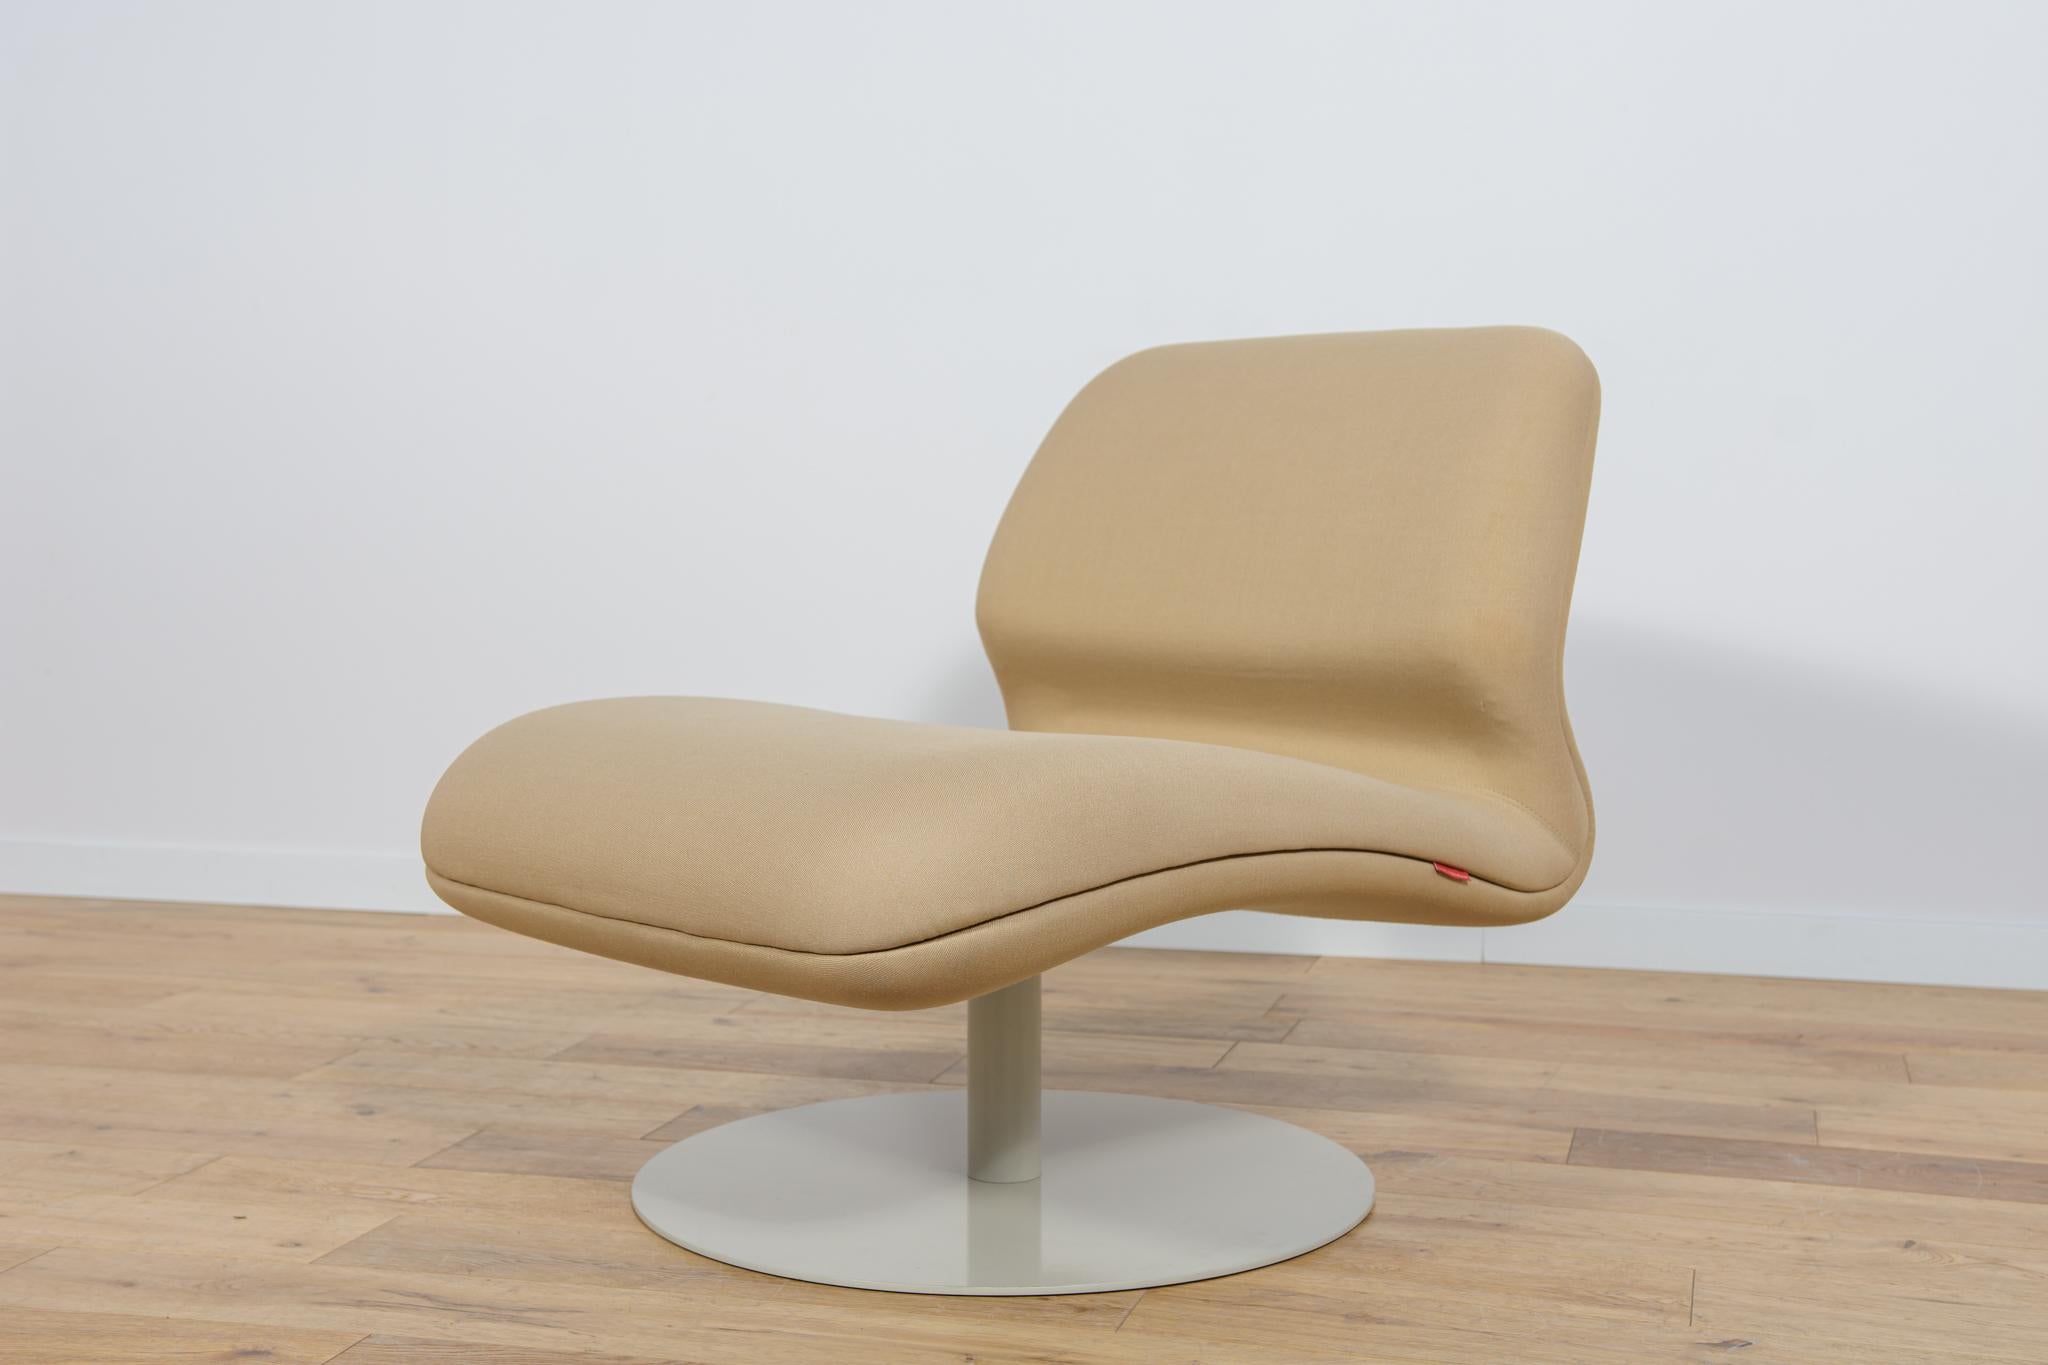 
Le fauteuil MV10 de Morten Voss pour l'usine danoise Fritz Hansen dans la première décennie du XXIe siècle. Un meuble à la forme moderniste intéressante. Le fauteuil est dans son état d'origine. Le fauteuil modèle MV10 a été nettoyé et est en très